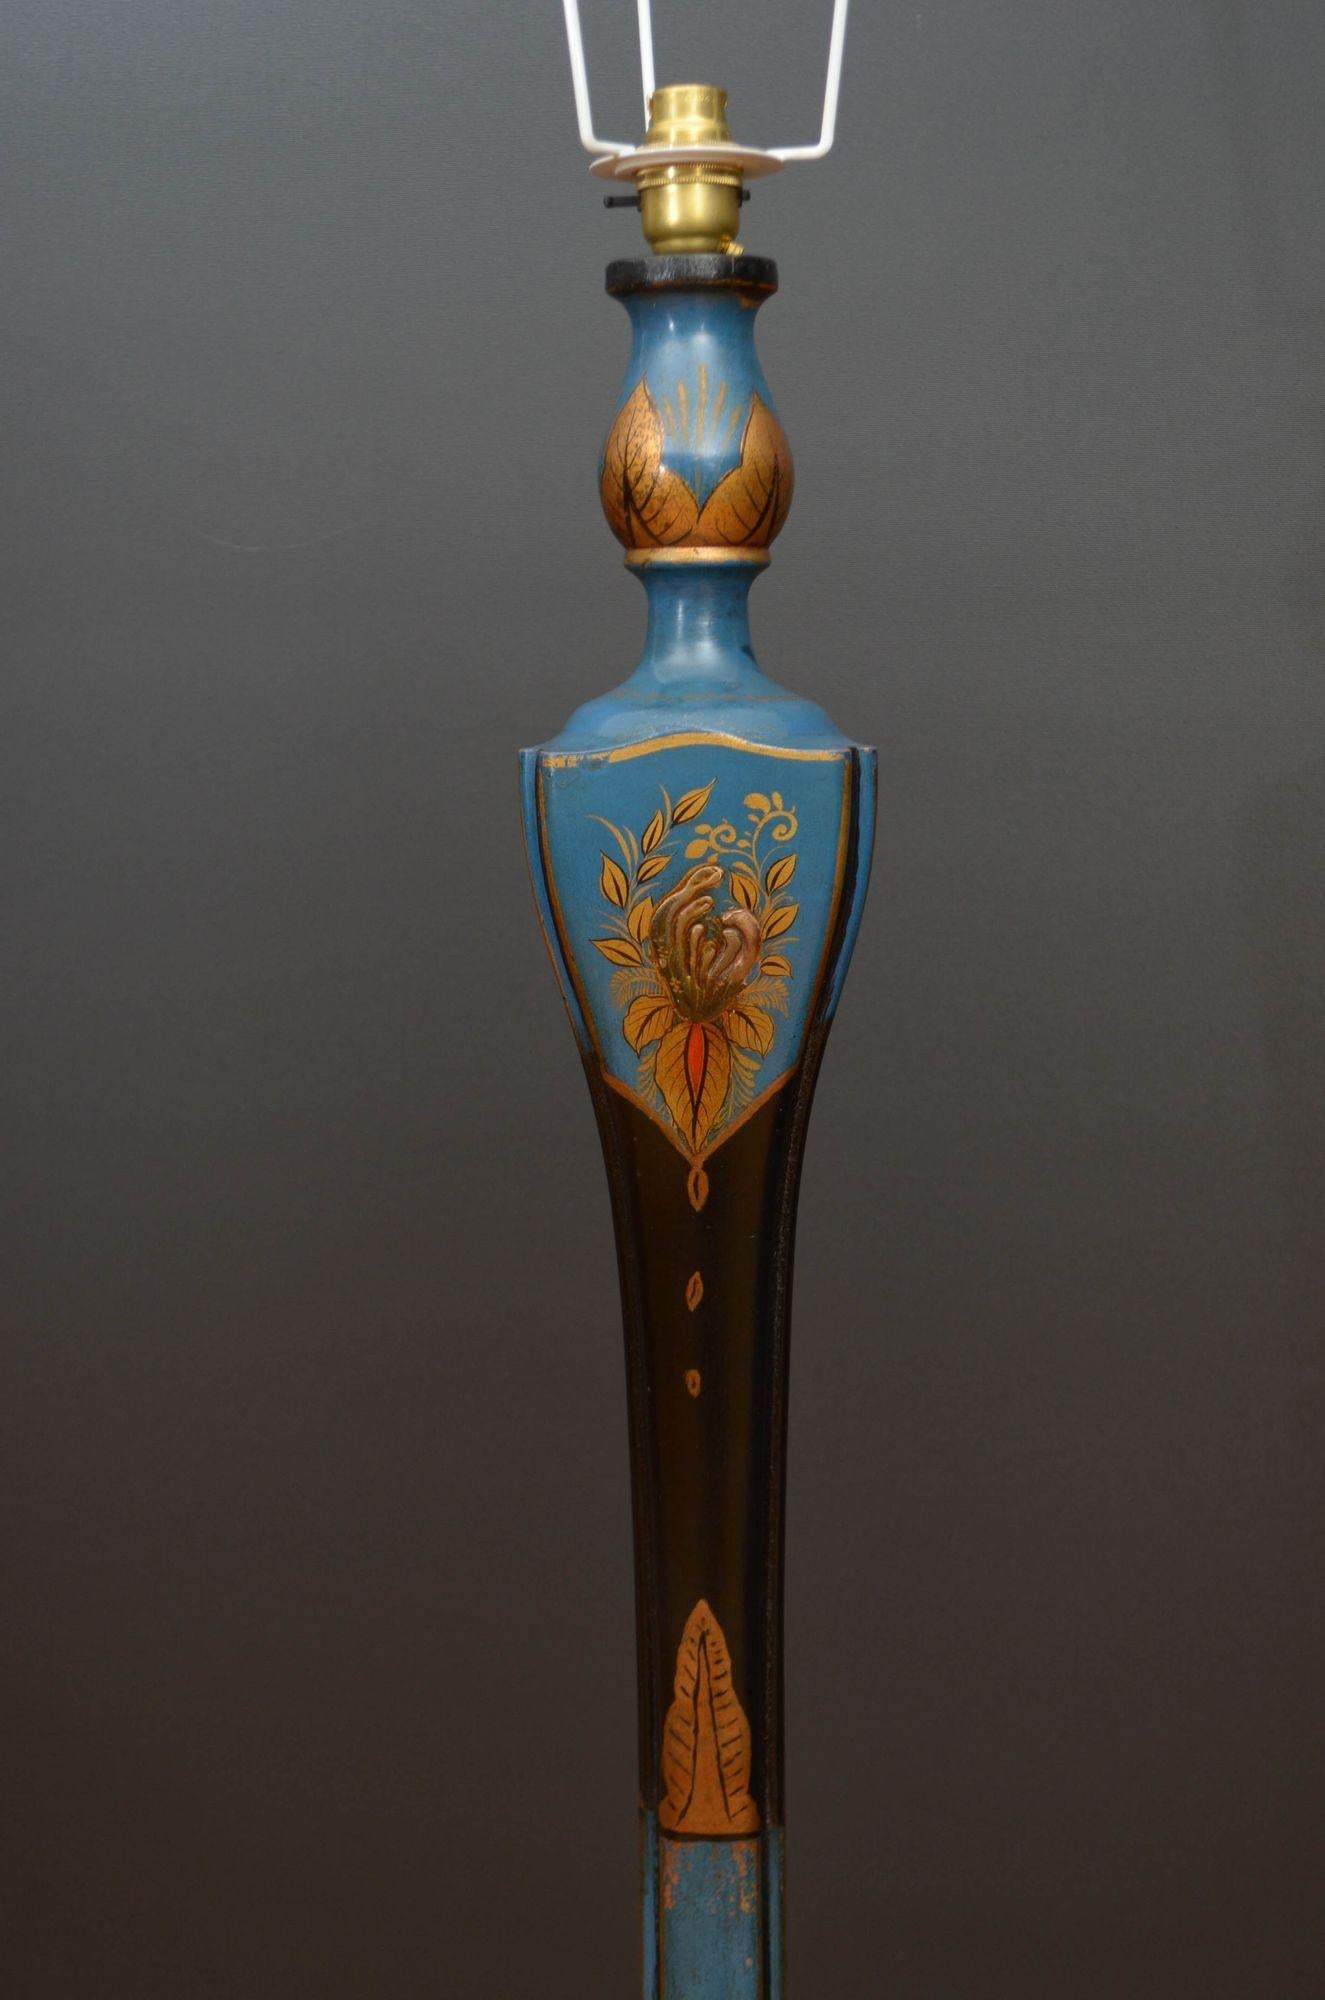 St049 Stehlampe aus gedrechseltem und lackiertem Chinoiserie-Holz des frühen 20. Jahrhunderts, dunkelblau, mit dekorativ gedrechseltem Ständer und gewölbtem Sockel, der auf drei flachen Füßen ruht.
Die Lampe wurde vor kurzem neu verkabelt und